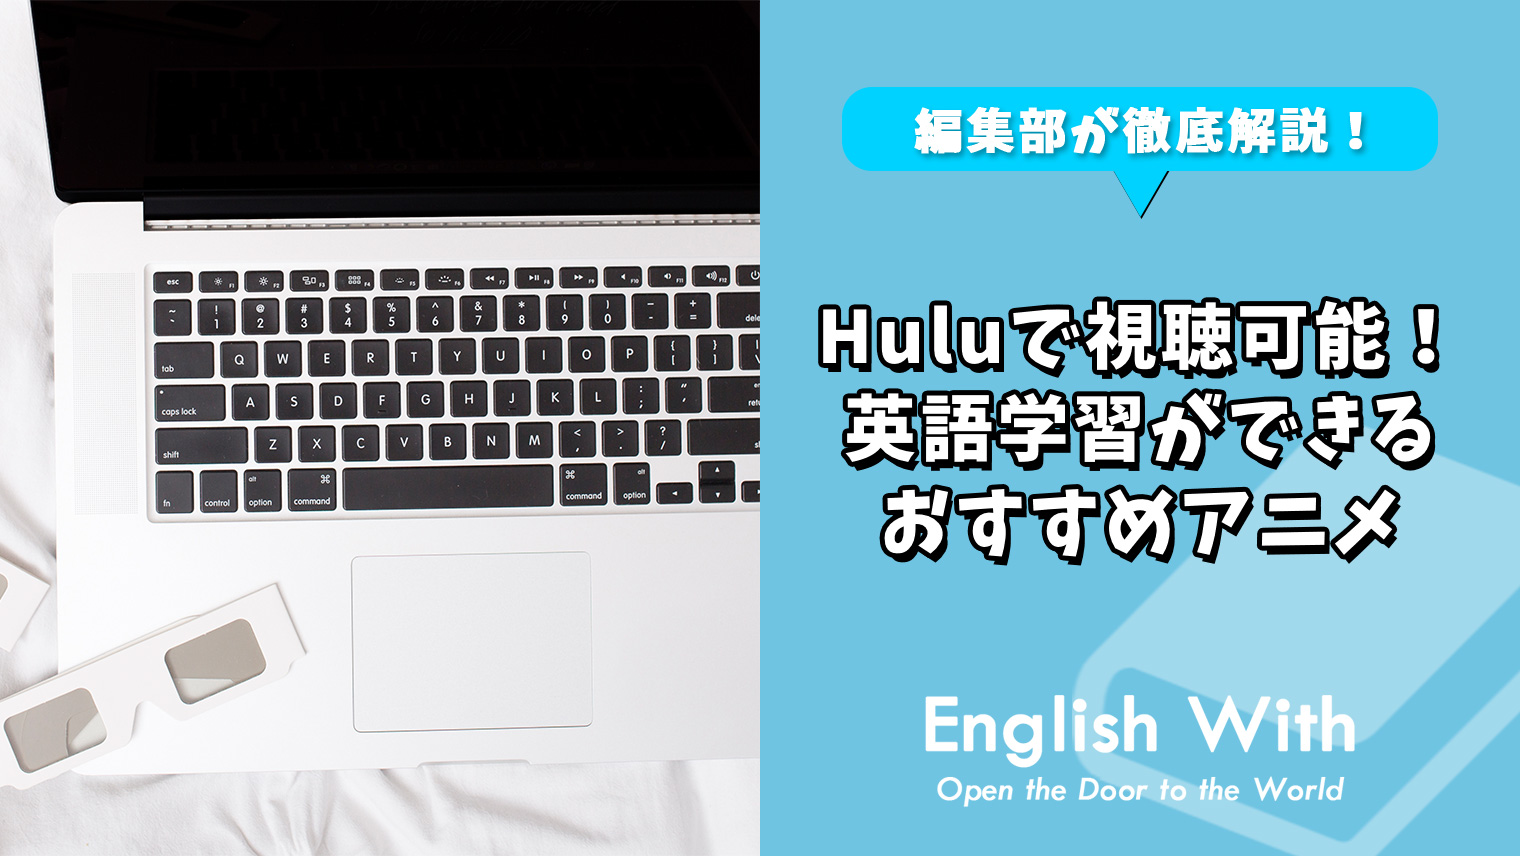 Huluで視聴可能 英語学習ができるおすすめアニメ 10選 おすすめ英会話 英語学習の比較 ランキング English With